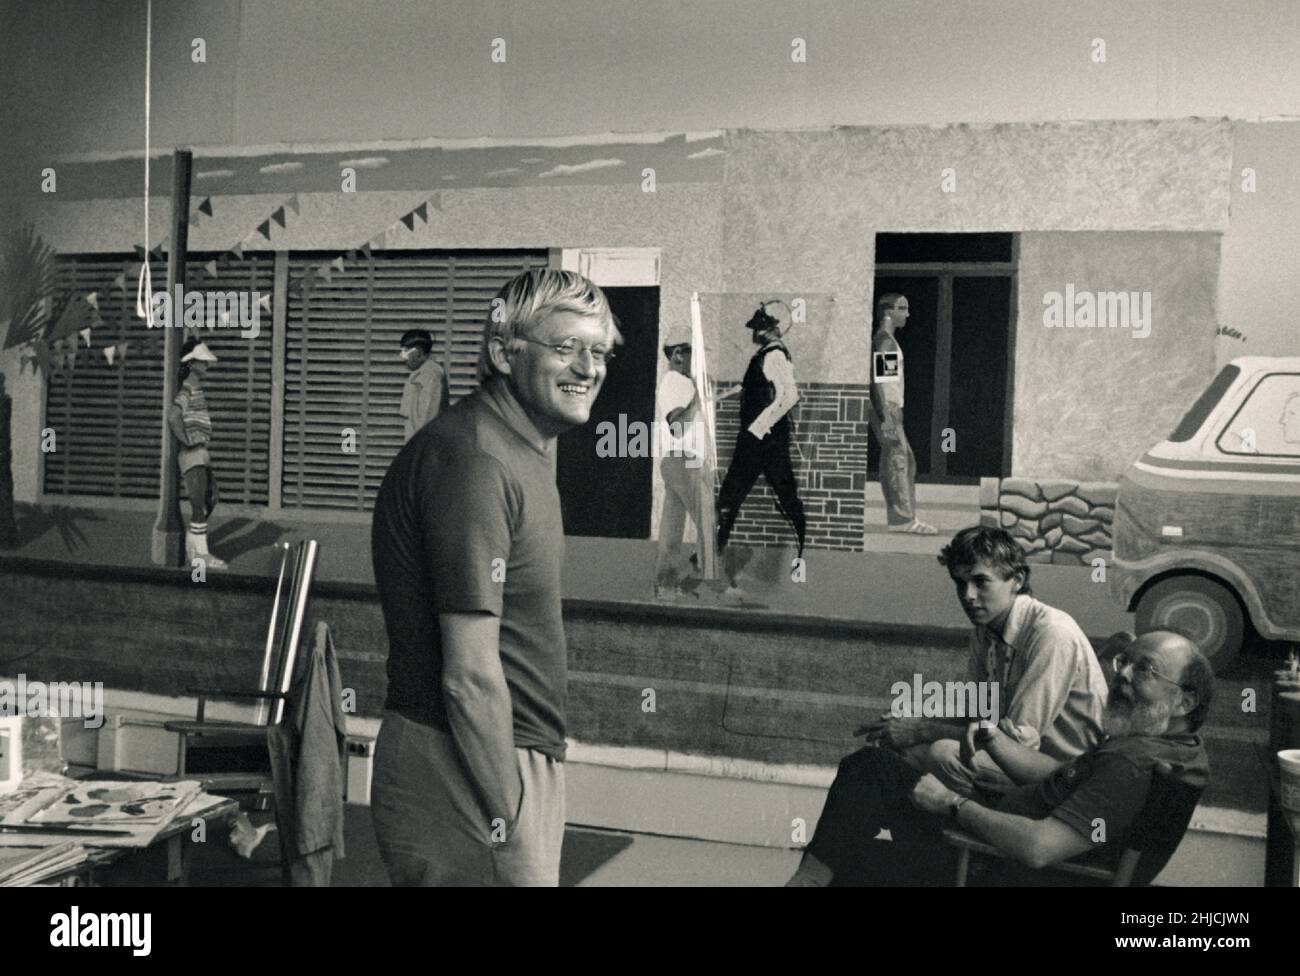 Der Maler David Hockney mit Henry Geldzahler und einem Freund in seinem Atelier am Pico Boulevard in Los Angeles, Kalifornien, 1979. Hockney war ein wichtiger Beitrag zur britischen Pop-Art-Bewegung der 1960er Jahre und lebt heute in Los Angeles, Kalifornien. Geldzahler war ein Kurator, der sich mit berühmten Künstlern seiner Zeit mischte. Stockfoto